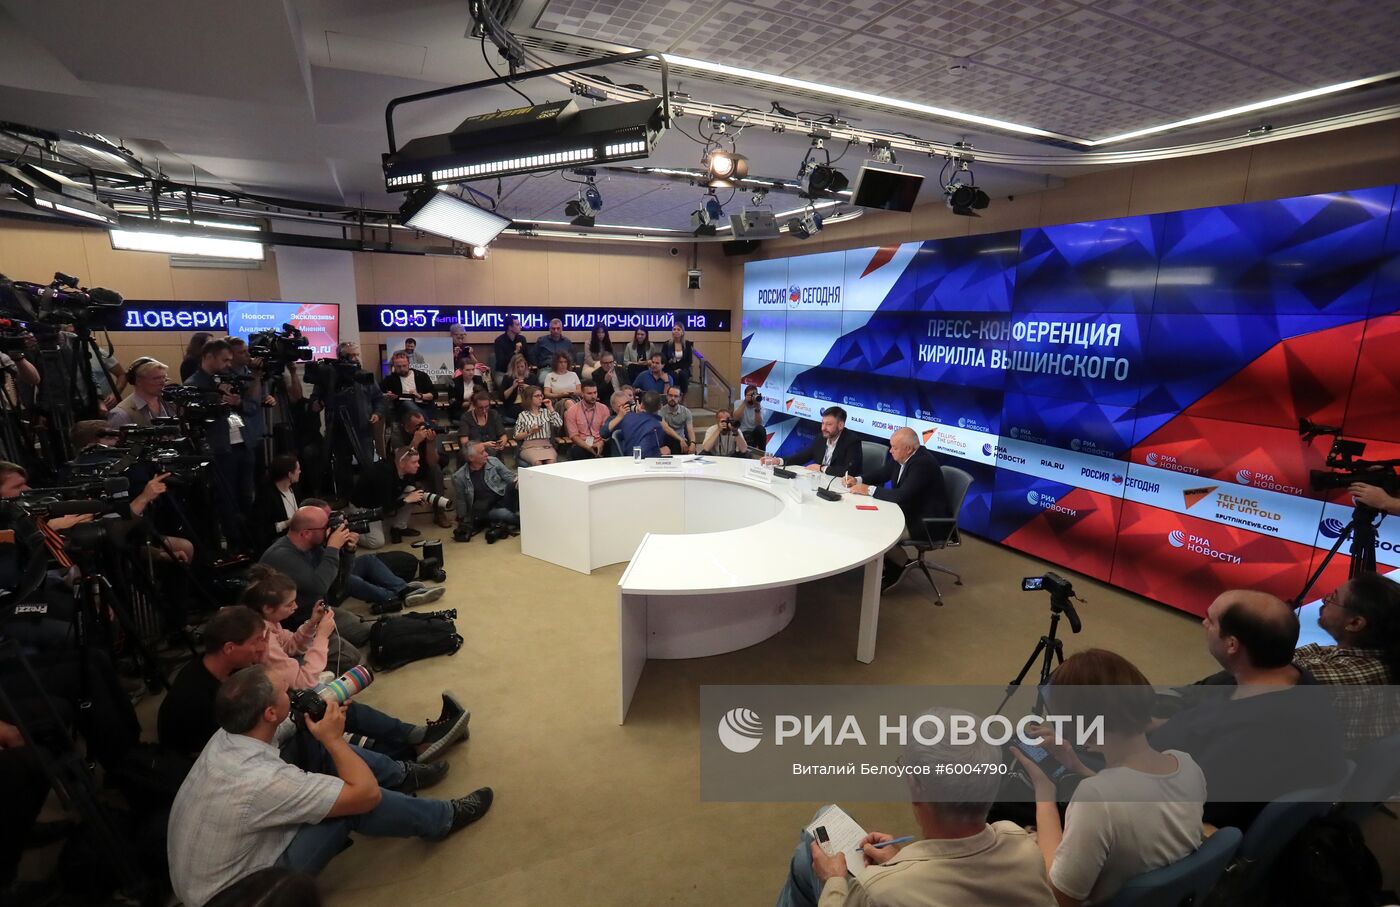 Пресс-конференция К. Вышинского